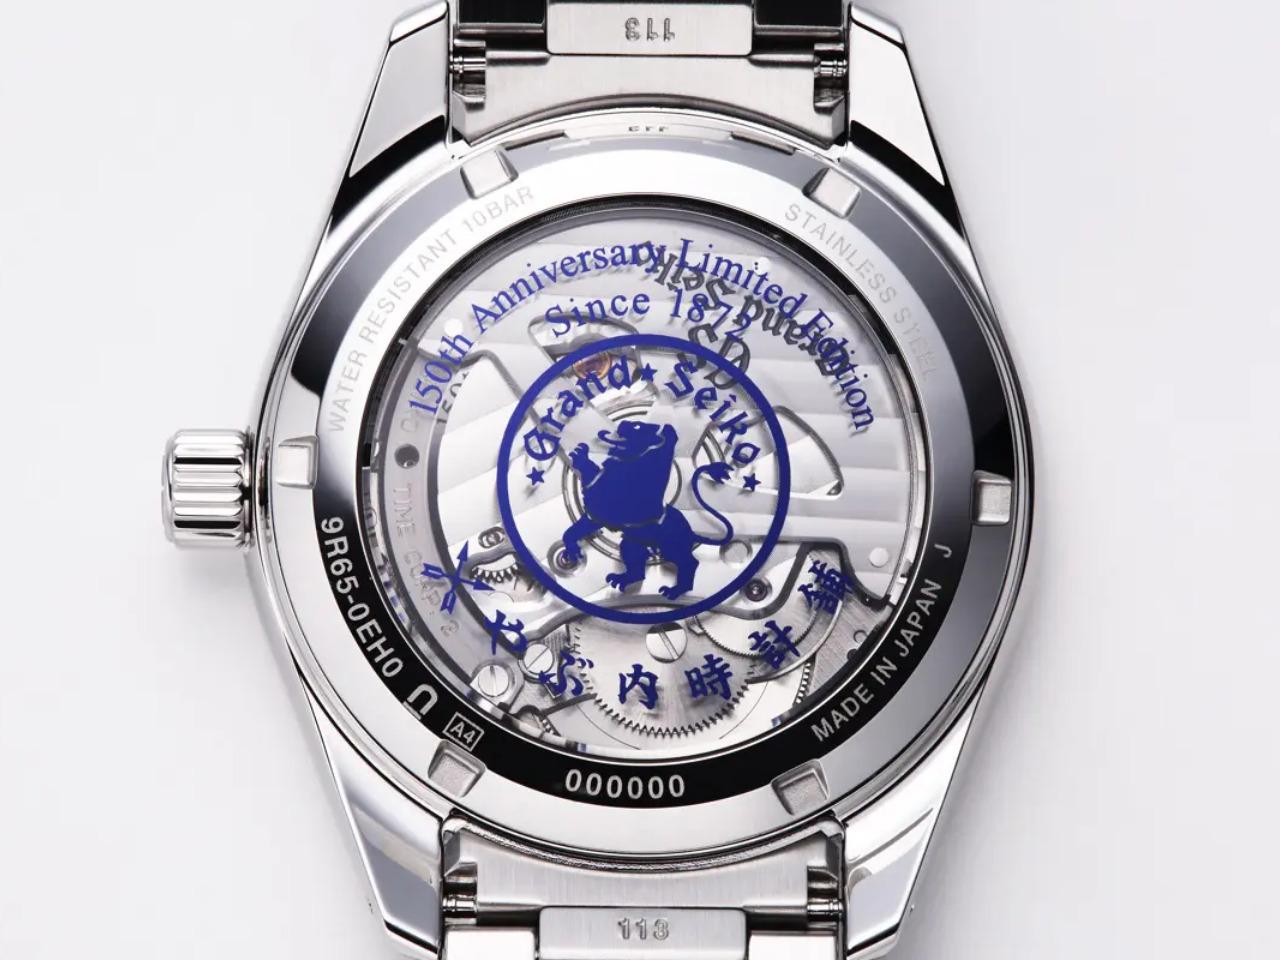 Ref.SBGA475を手掛けたやぶ内時計舗は、AJHH加盟を認められた150年の歴史を持つ時計商である